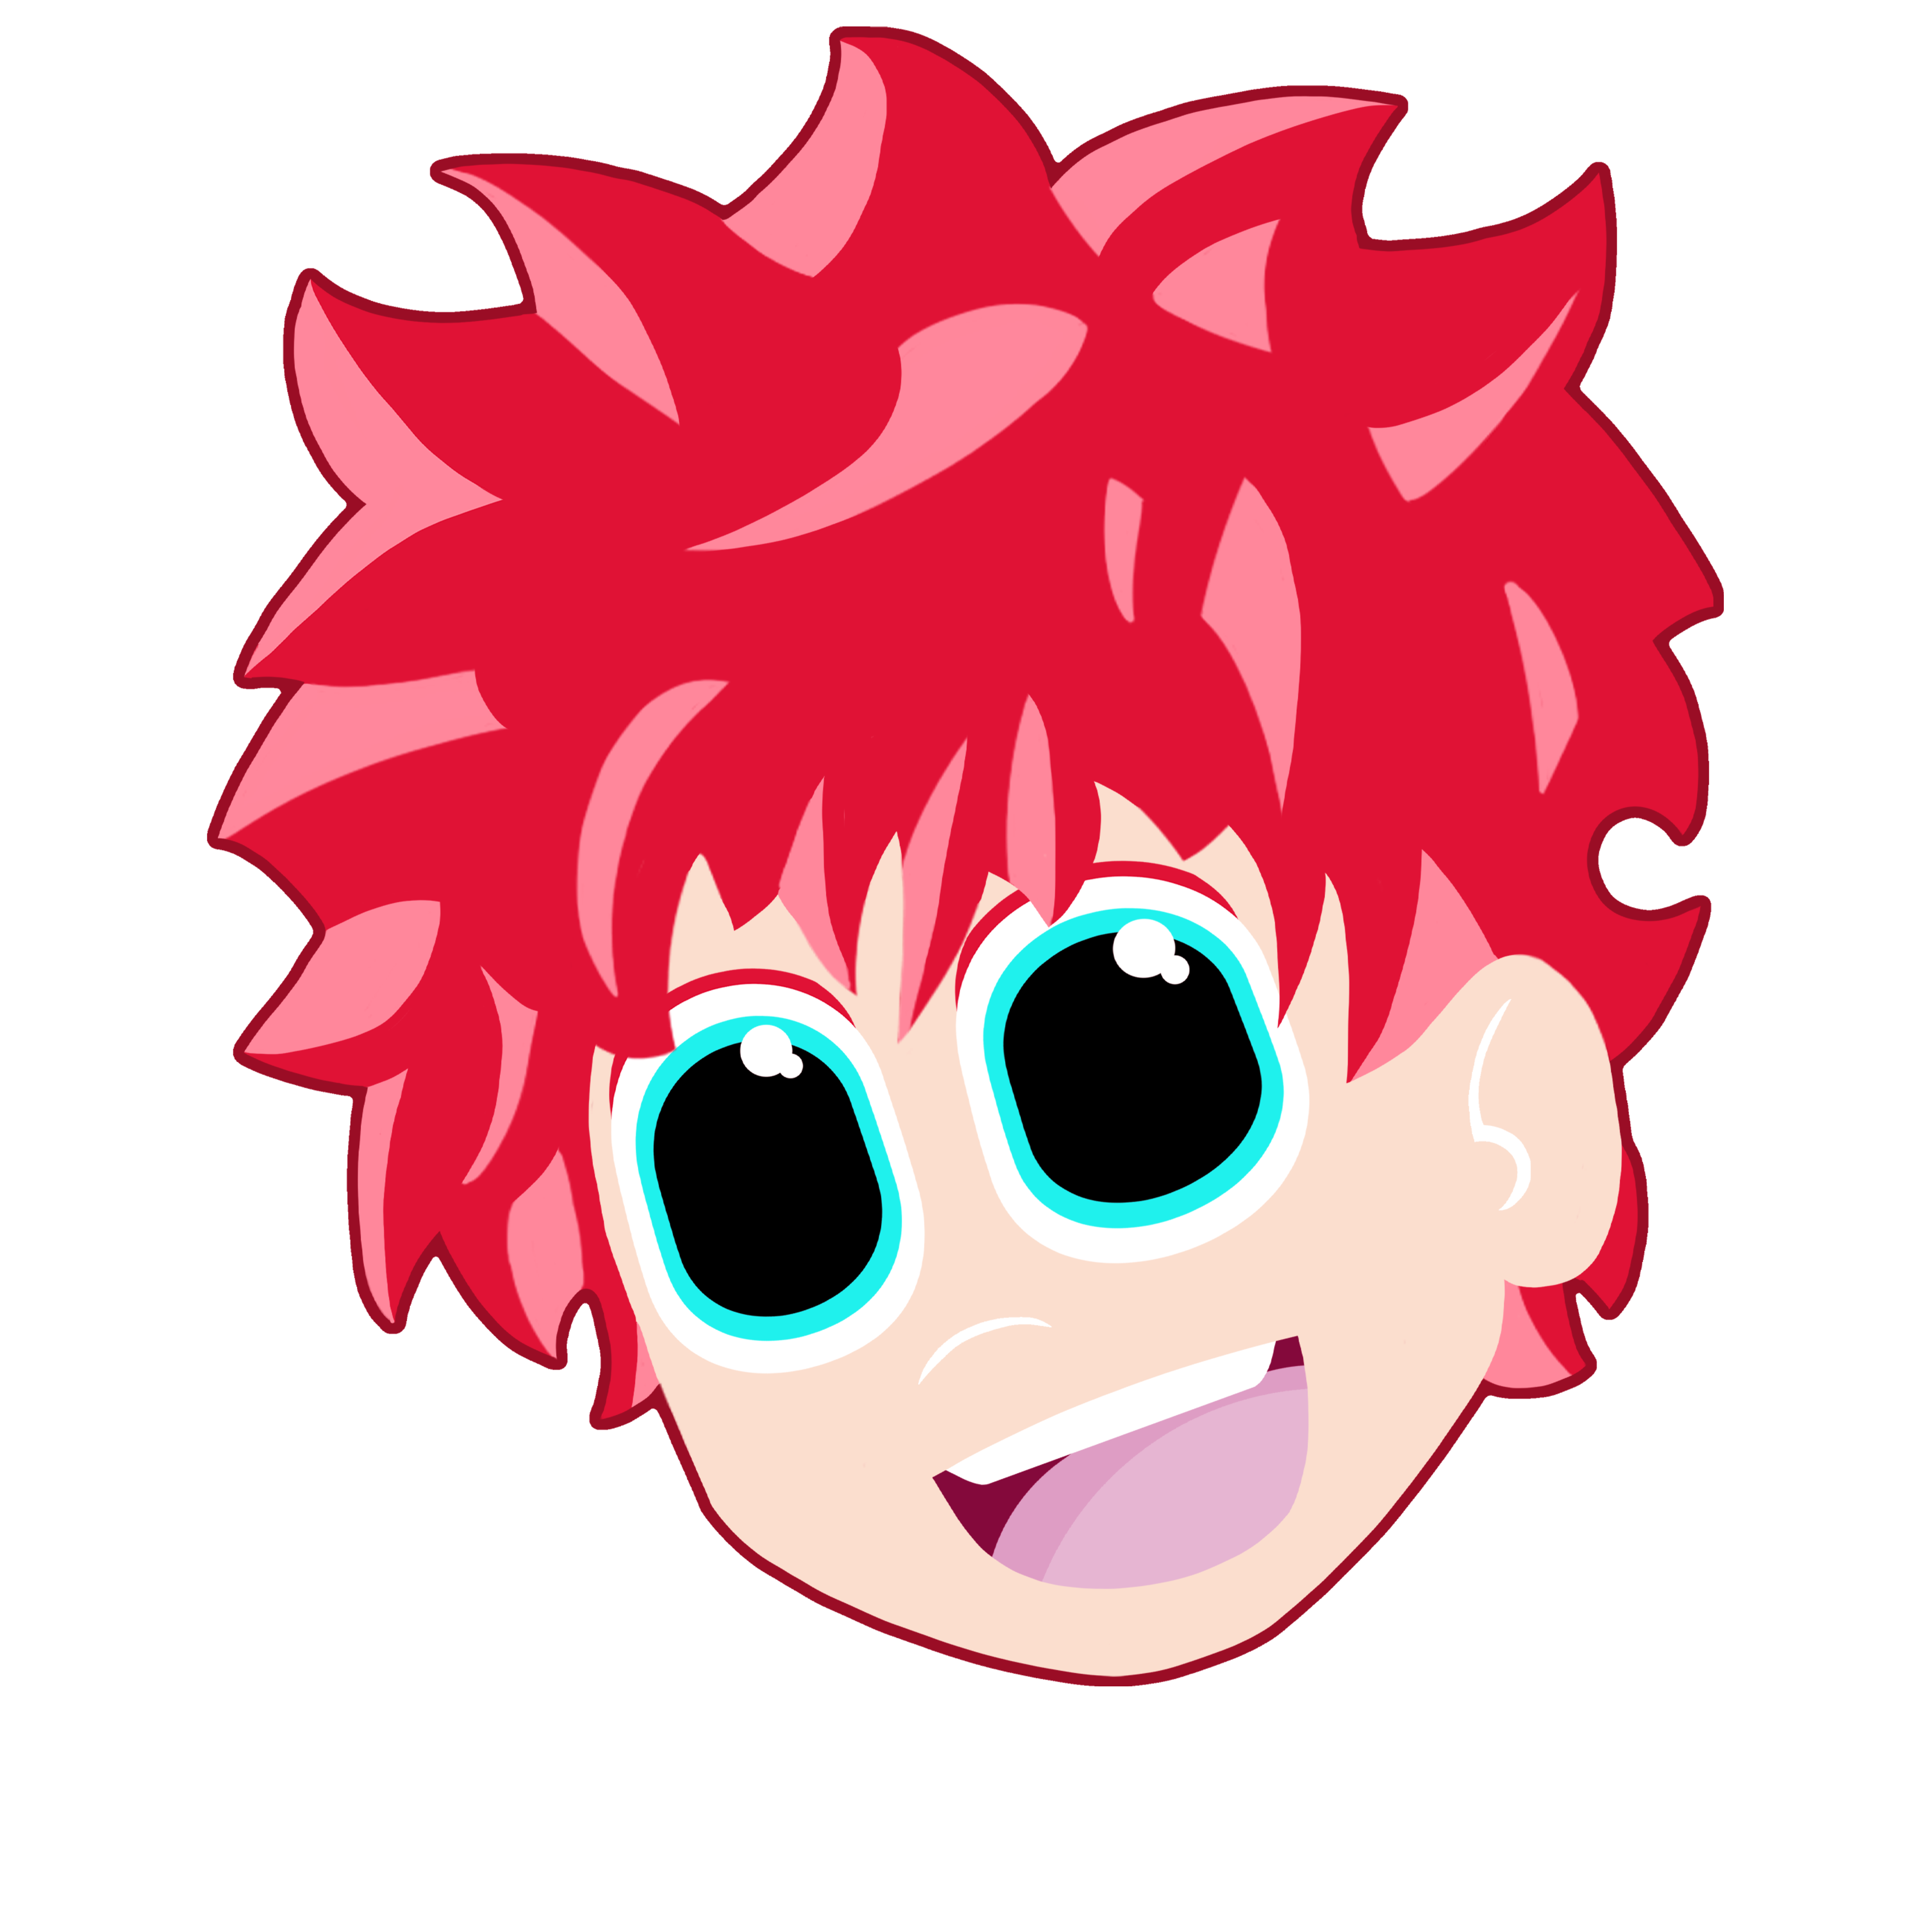 Carter Schmidt